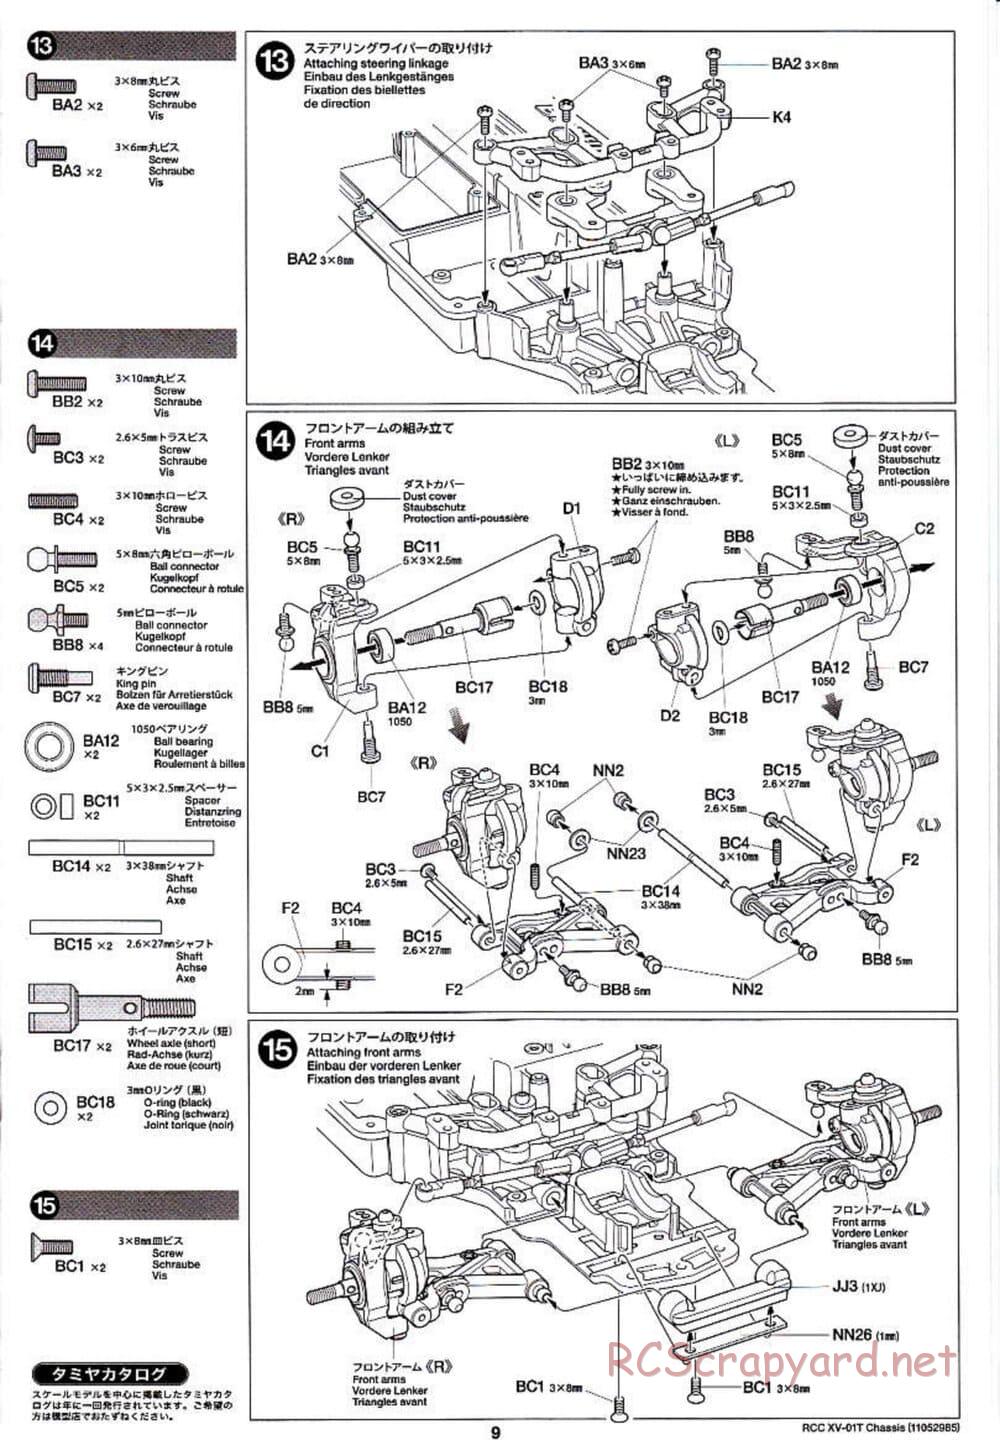 Tamiya - XV-01T Chassis - Manual - Page 9